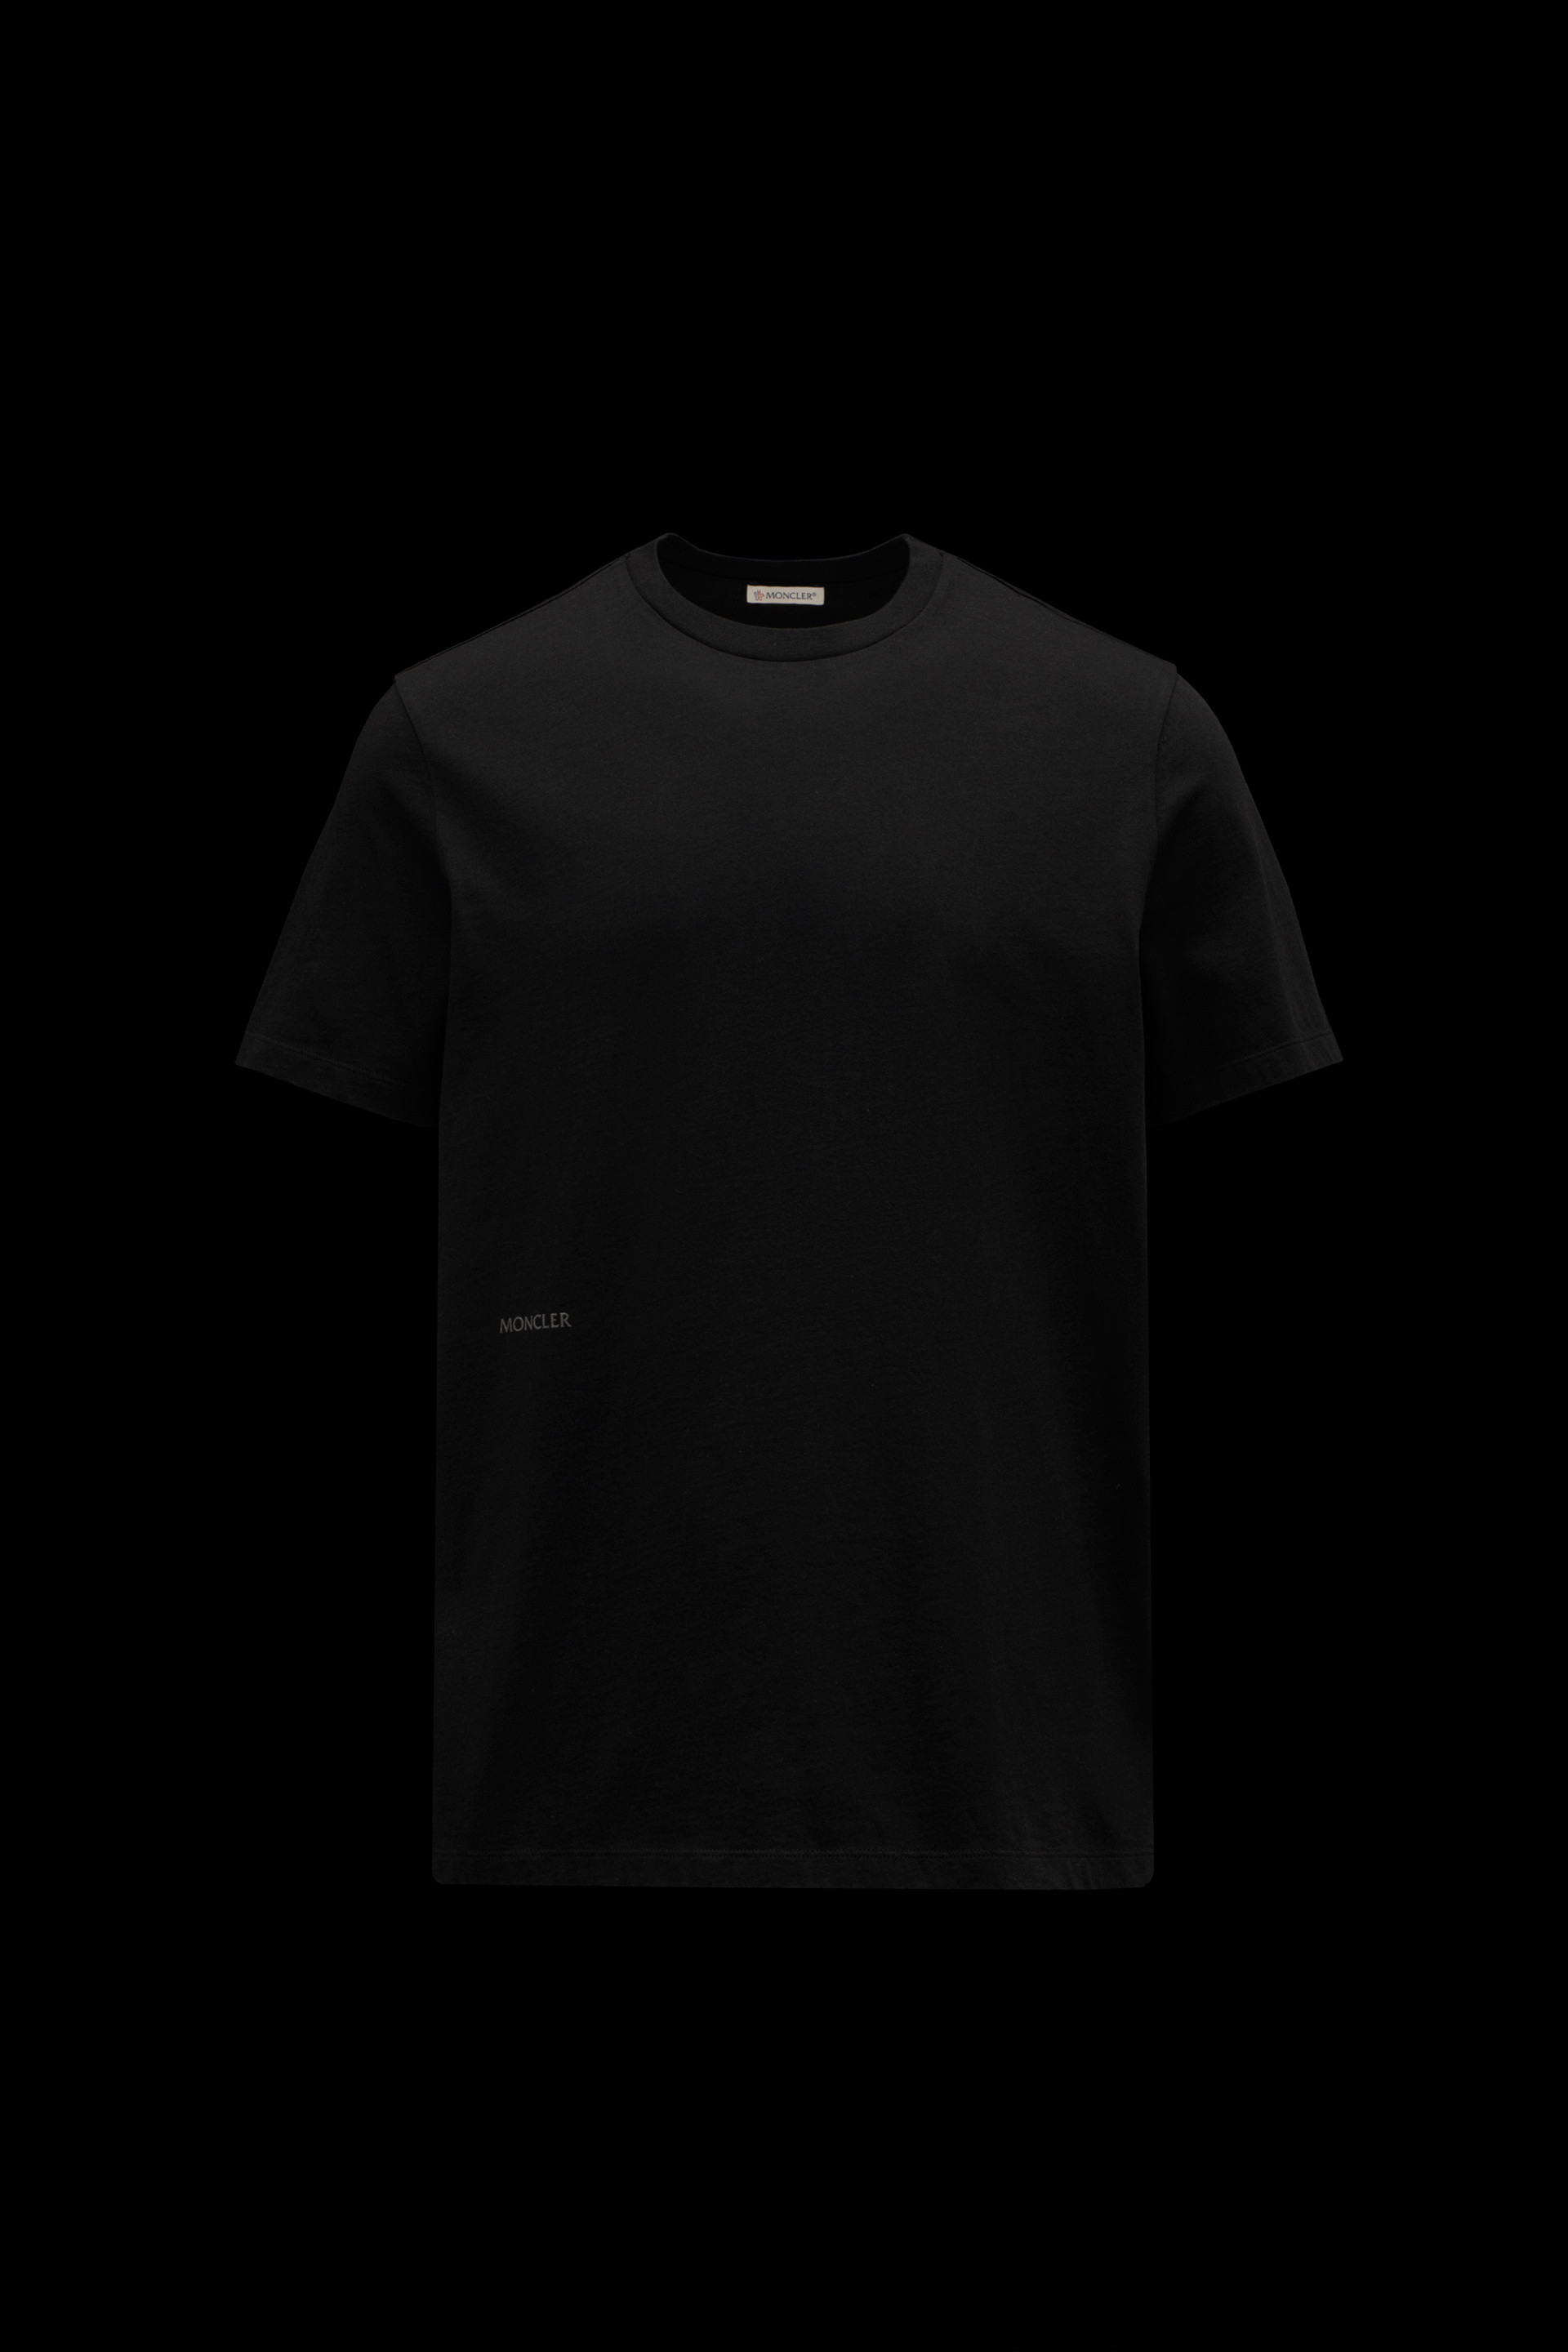 ブラック バックプリントTシャツ : Tシャツ＆ポロシャツ 向けの メンズ 